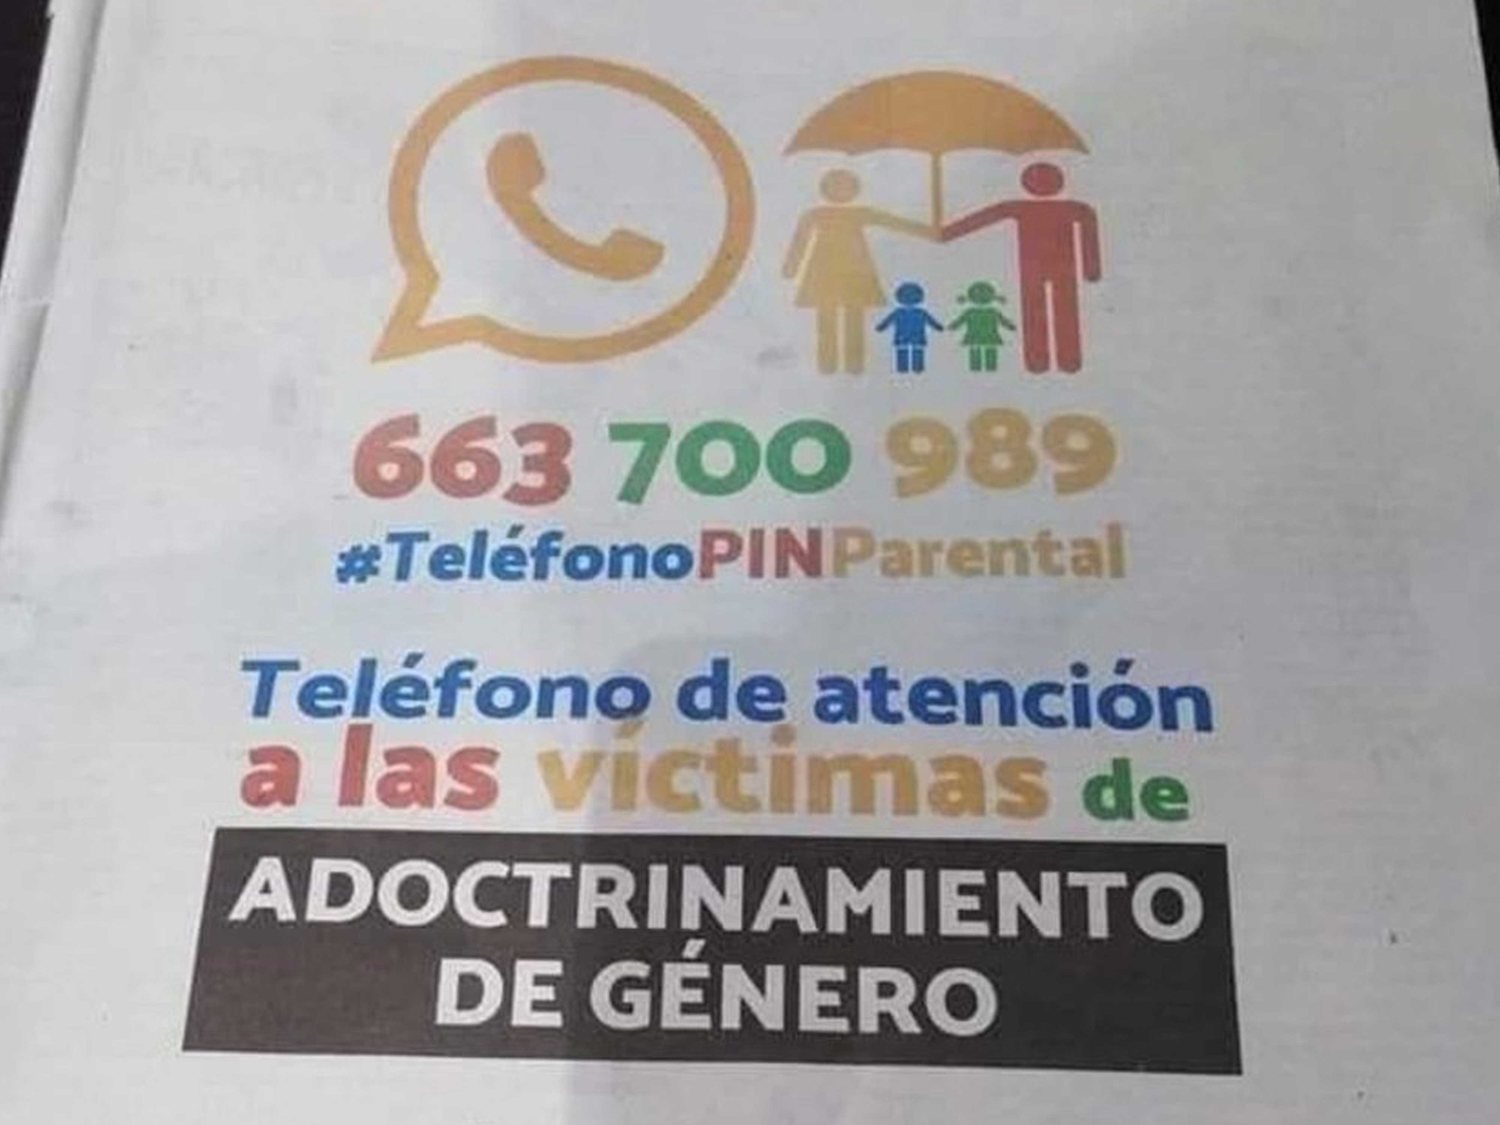 Hazte Oír lanza un teléfono del veto parental para denunciar el "adoctrinamiento" y recibe un épico troleo